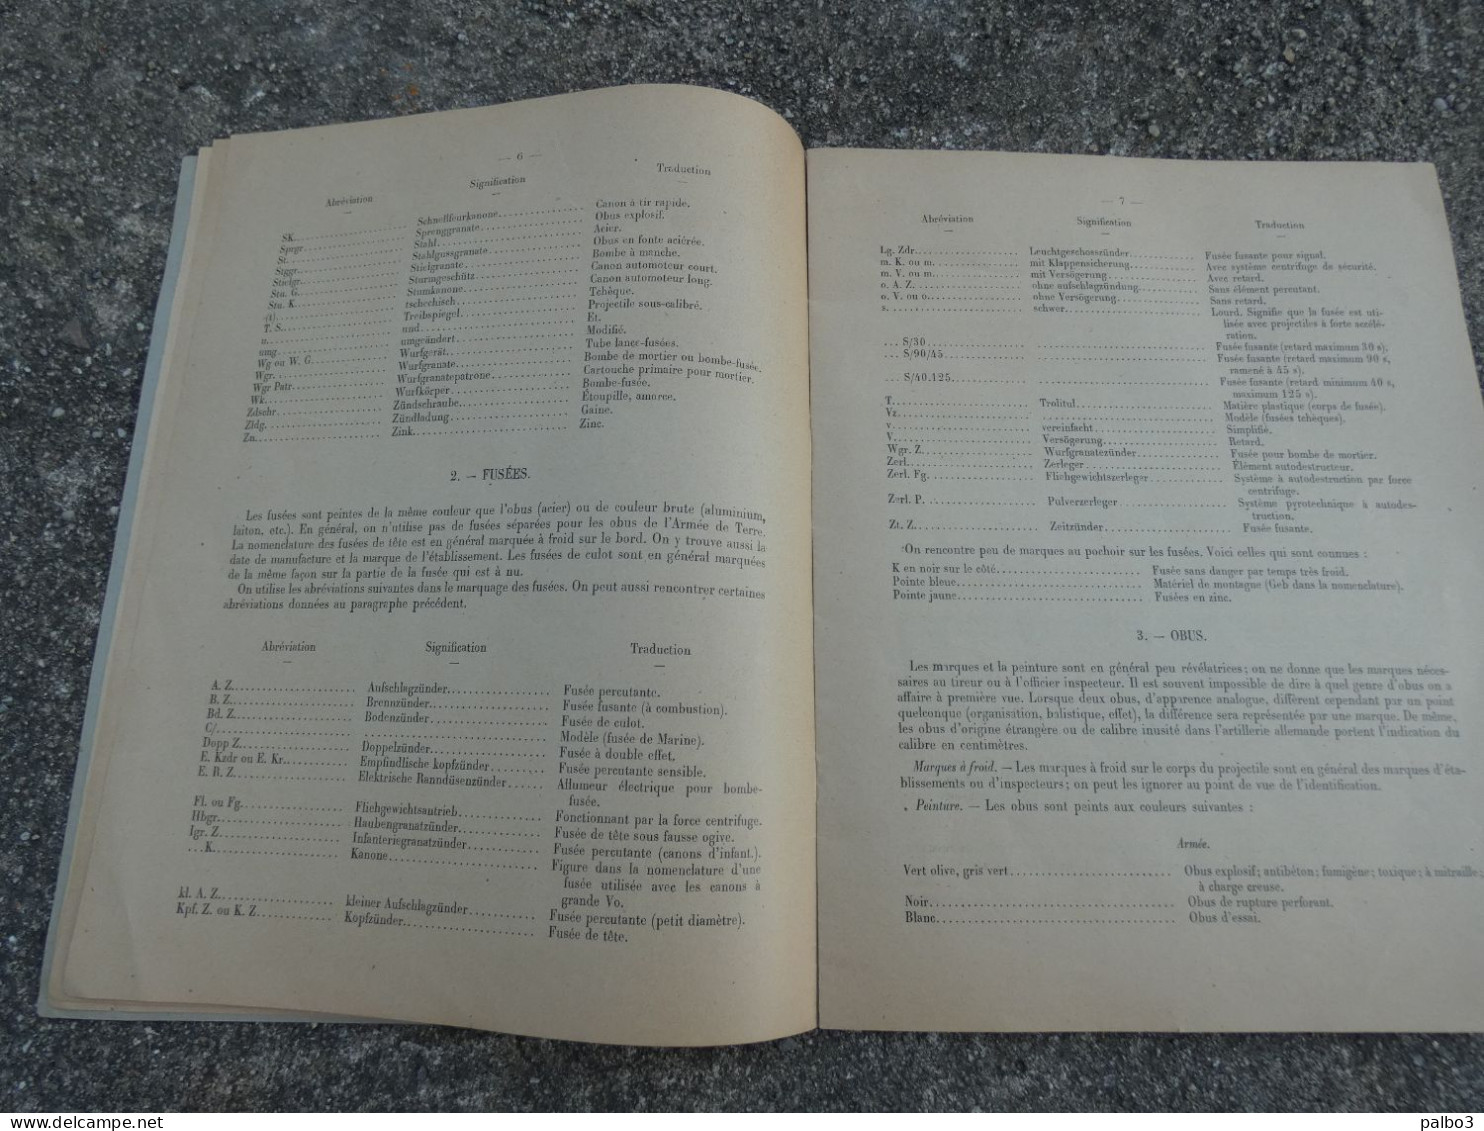 Rare Manuel 1952 Note sur les Marques et la Nomenclature des Munitions Allemandes Artillerie